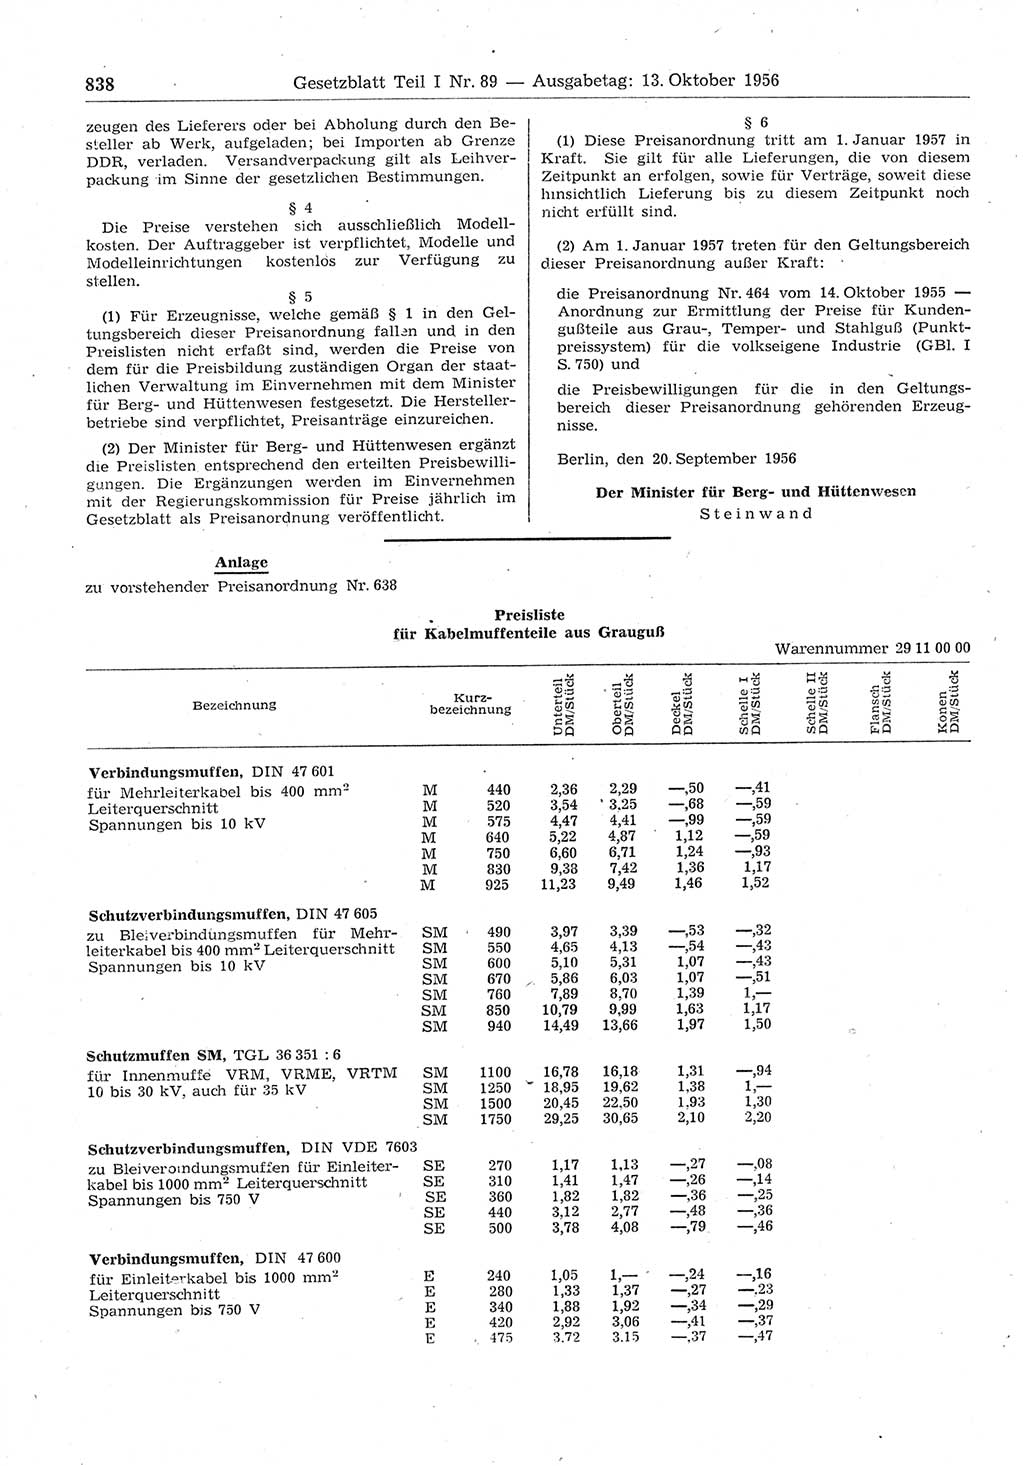 Gesetzblatt (GBl.) der Deutschen Demokratischen Republik (DDR) Teil Ⅰ 1956, Seite 838 (GBl. DDR Ⅰ 1956, S. 838)